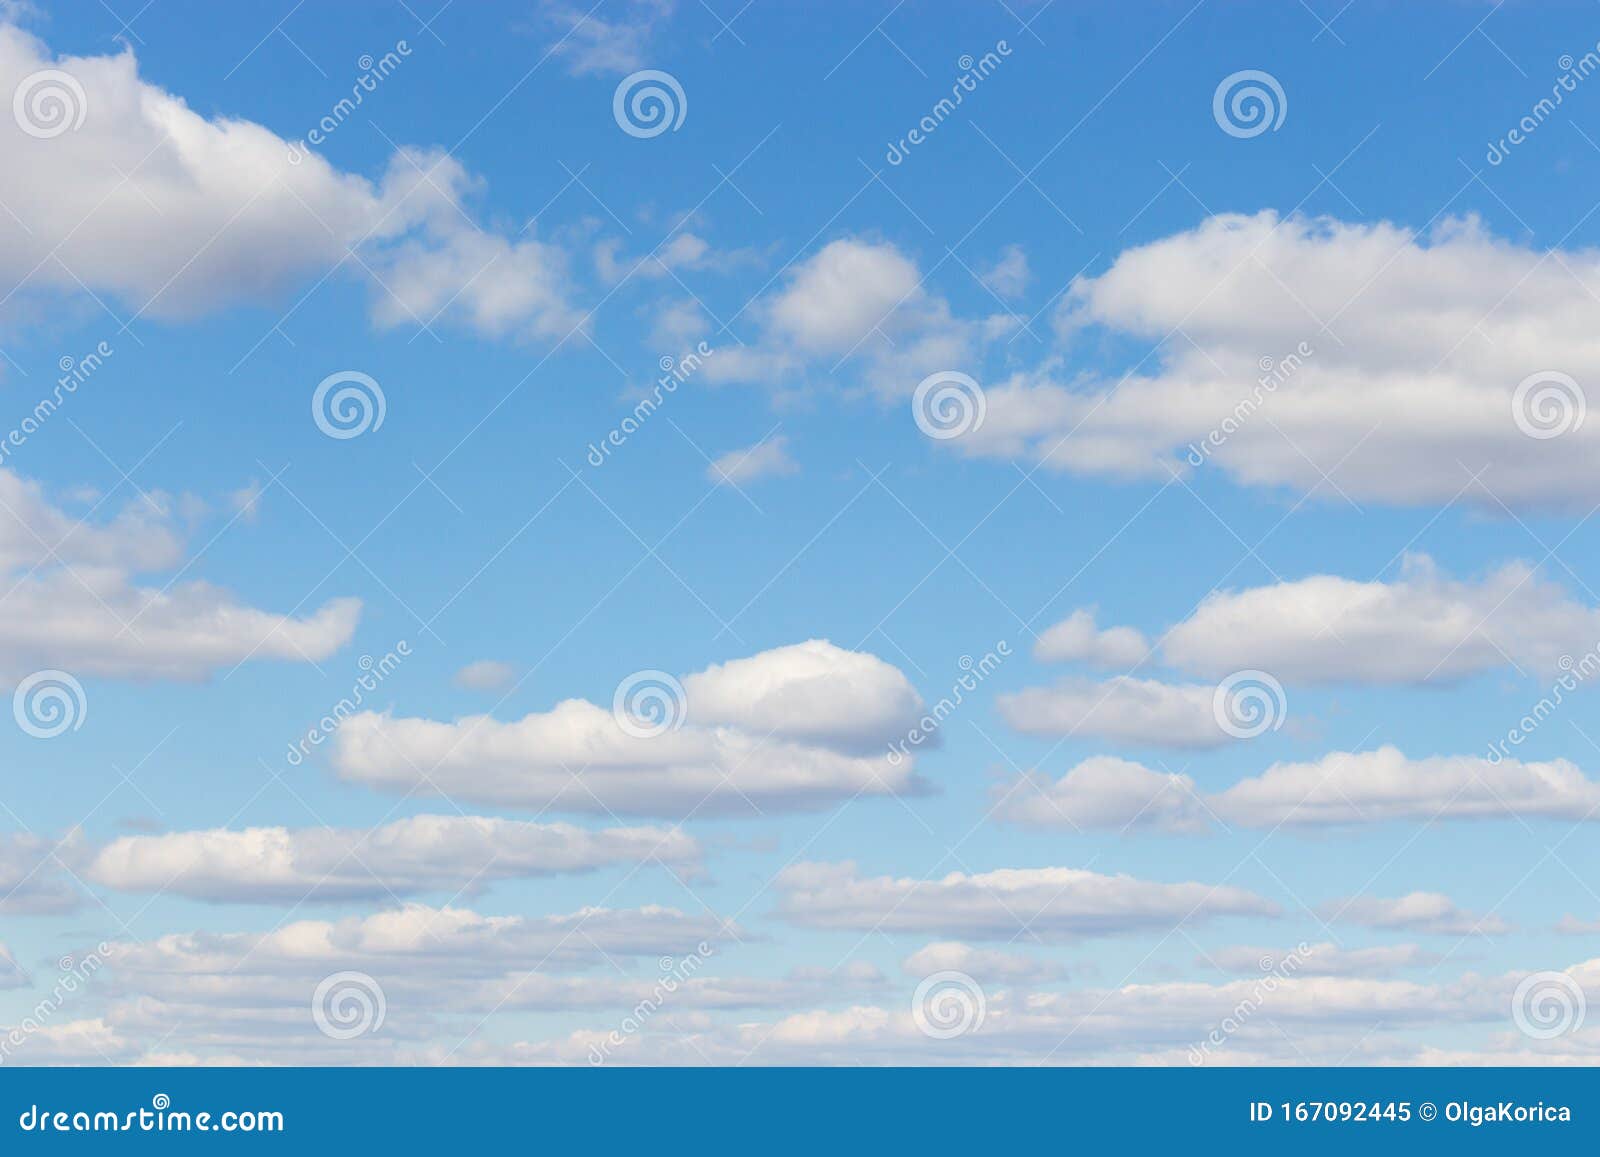 A.Monamour Digital Impreso Nubes Blancas Cielo Azul Nublado Fotografía Telones De Fondo 5X7Ft Delgado Estudio De Vinilo Accesorios